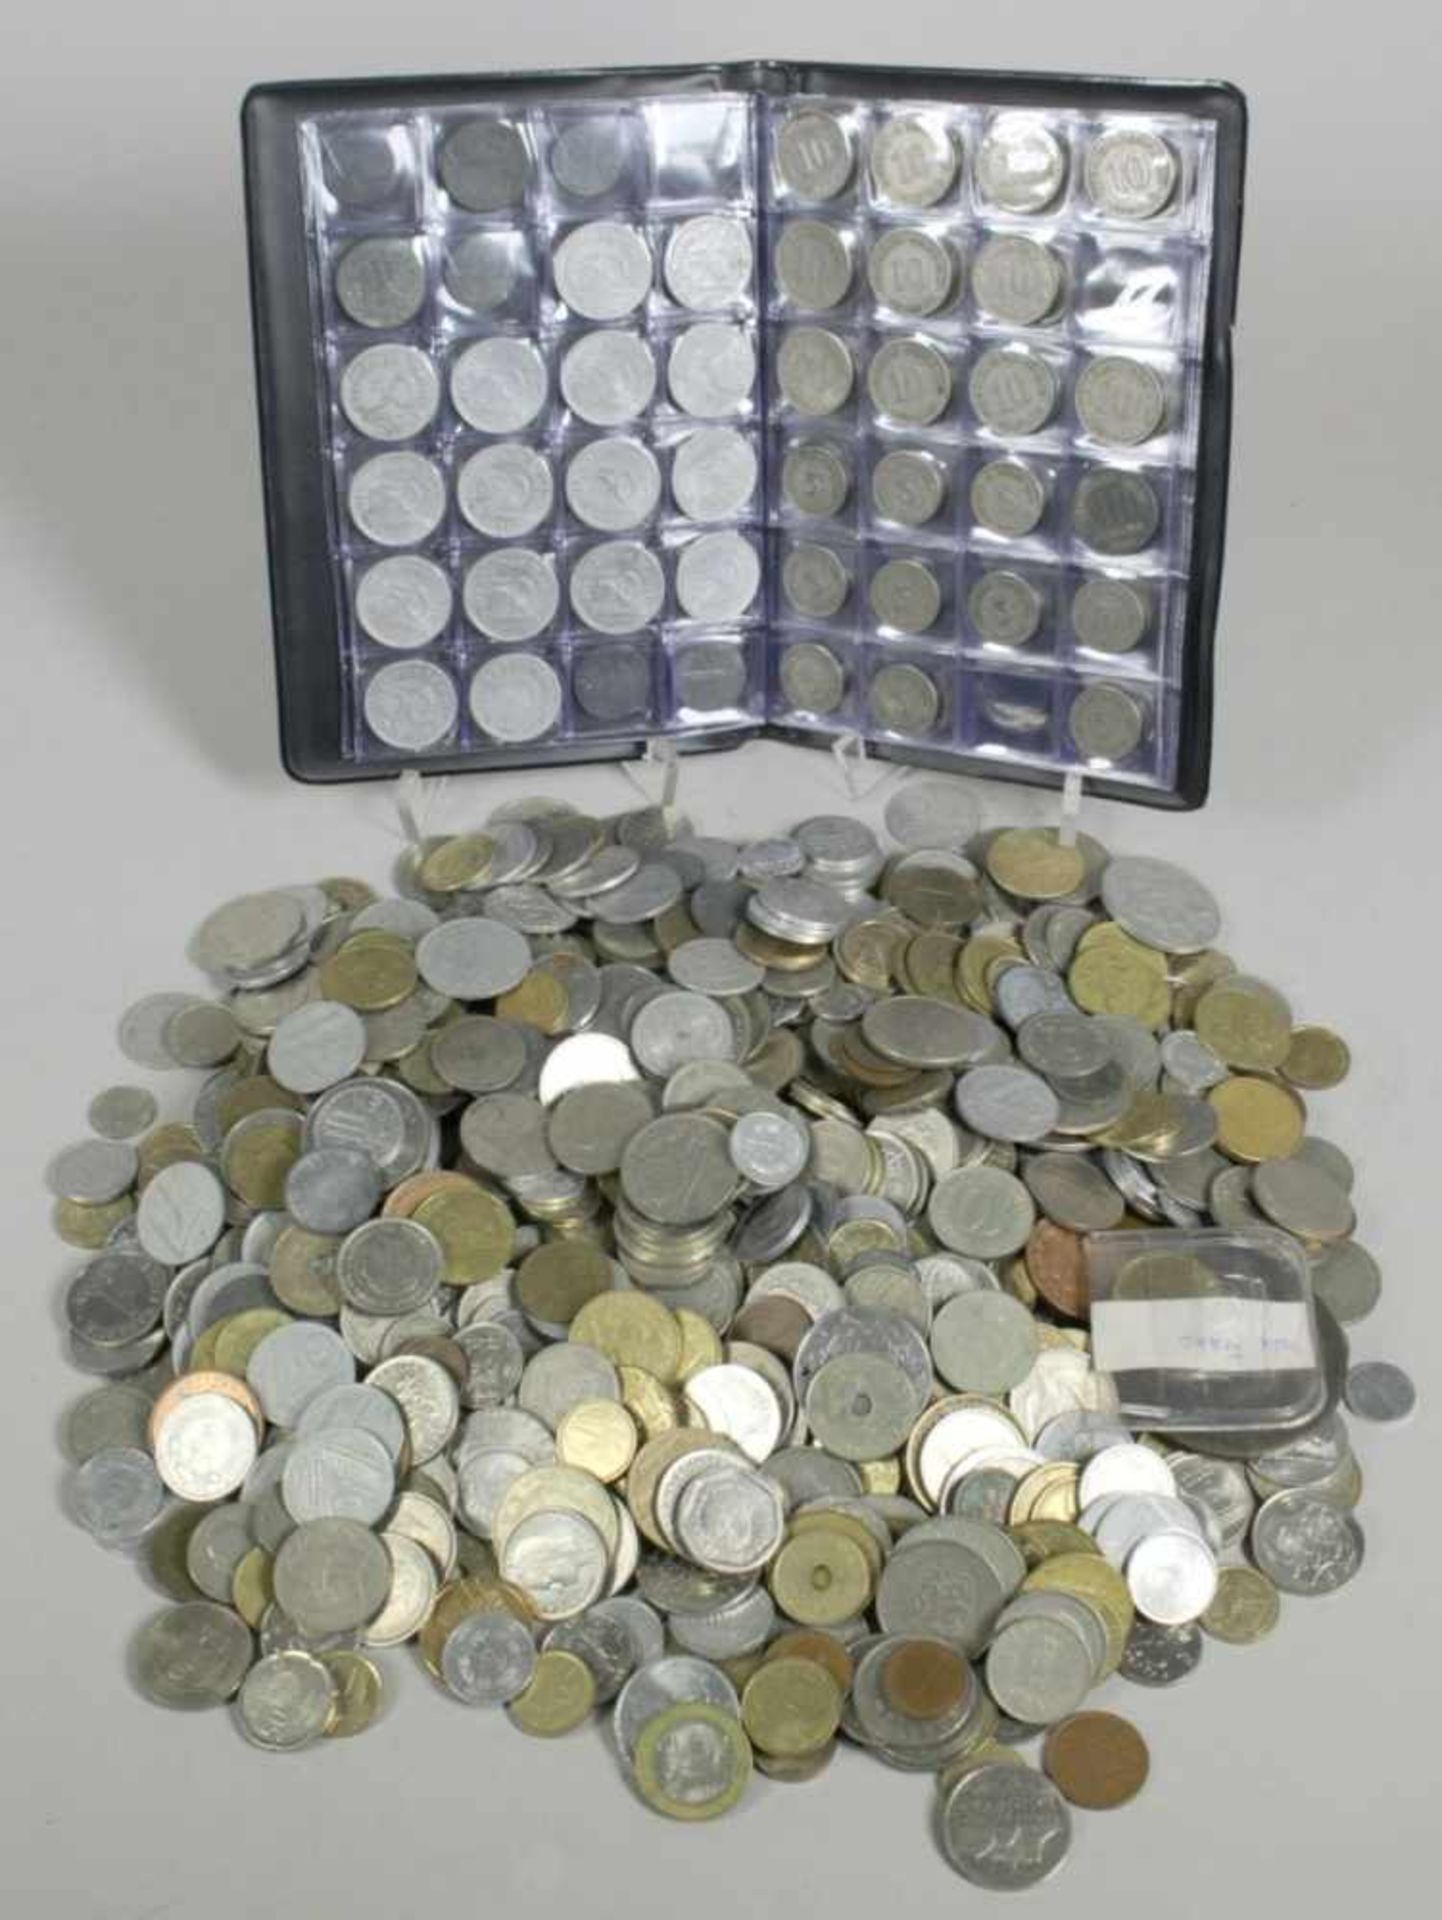 Konvolut Münzen, ungezählt, unterschiedliche Länder, Materialien, Formen, Größen undDekore